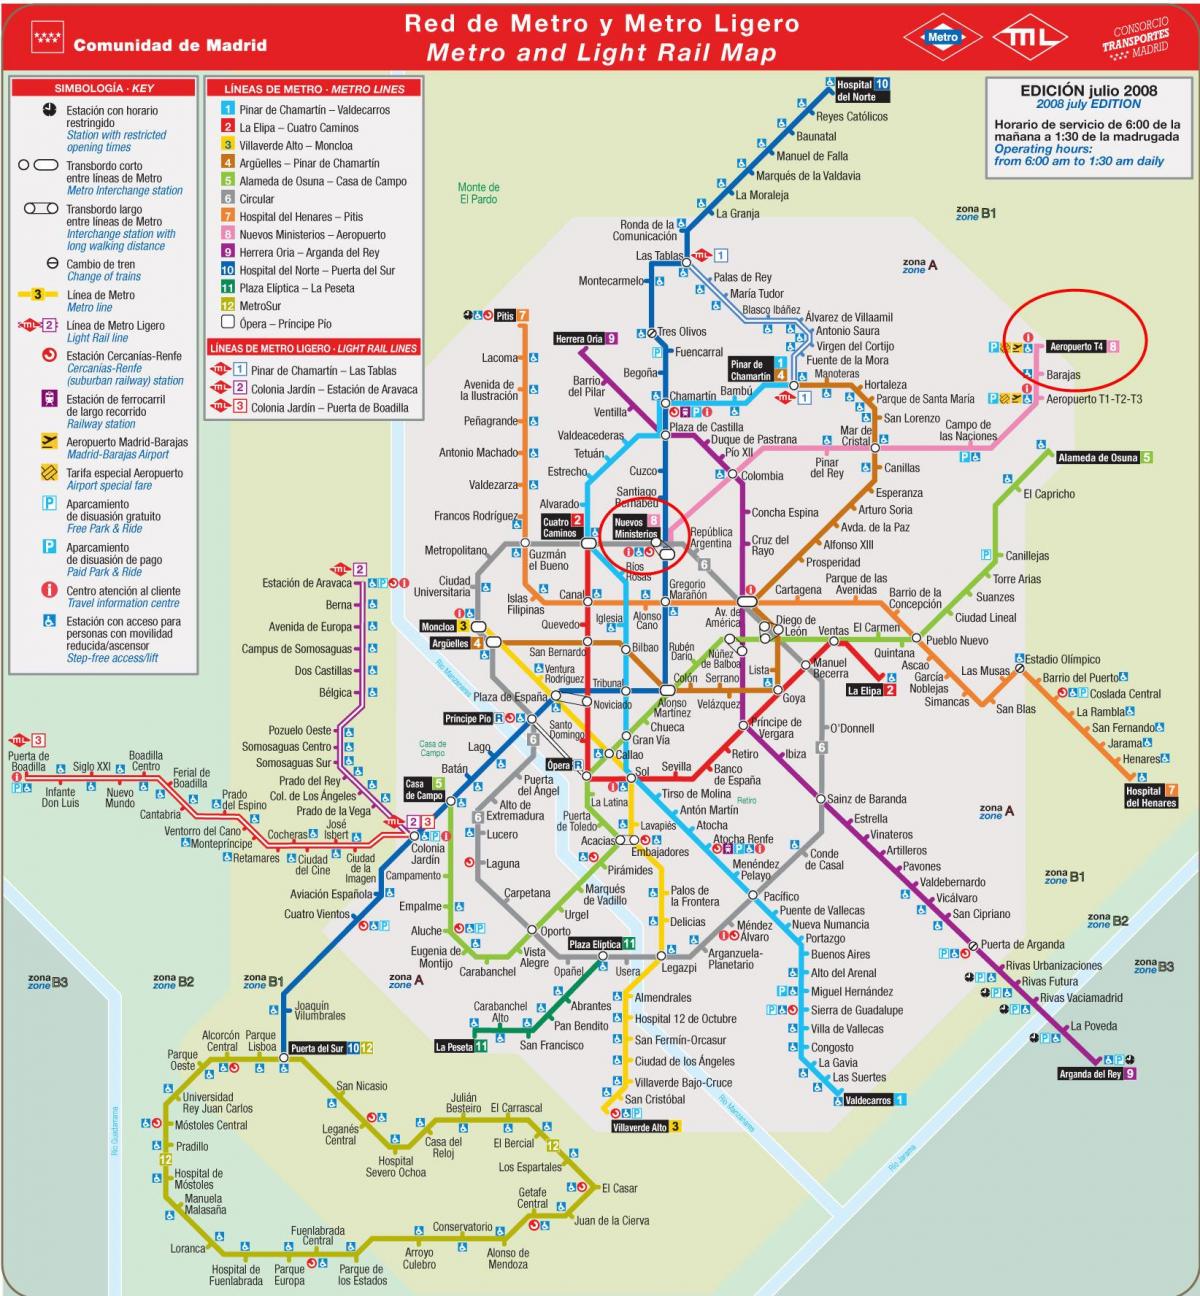 Madrid metro map havaalanı